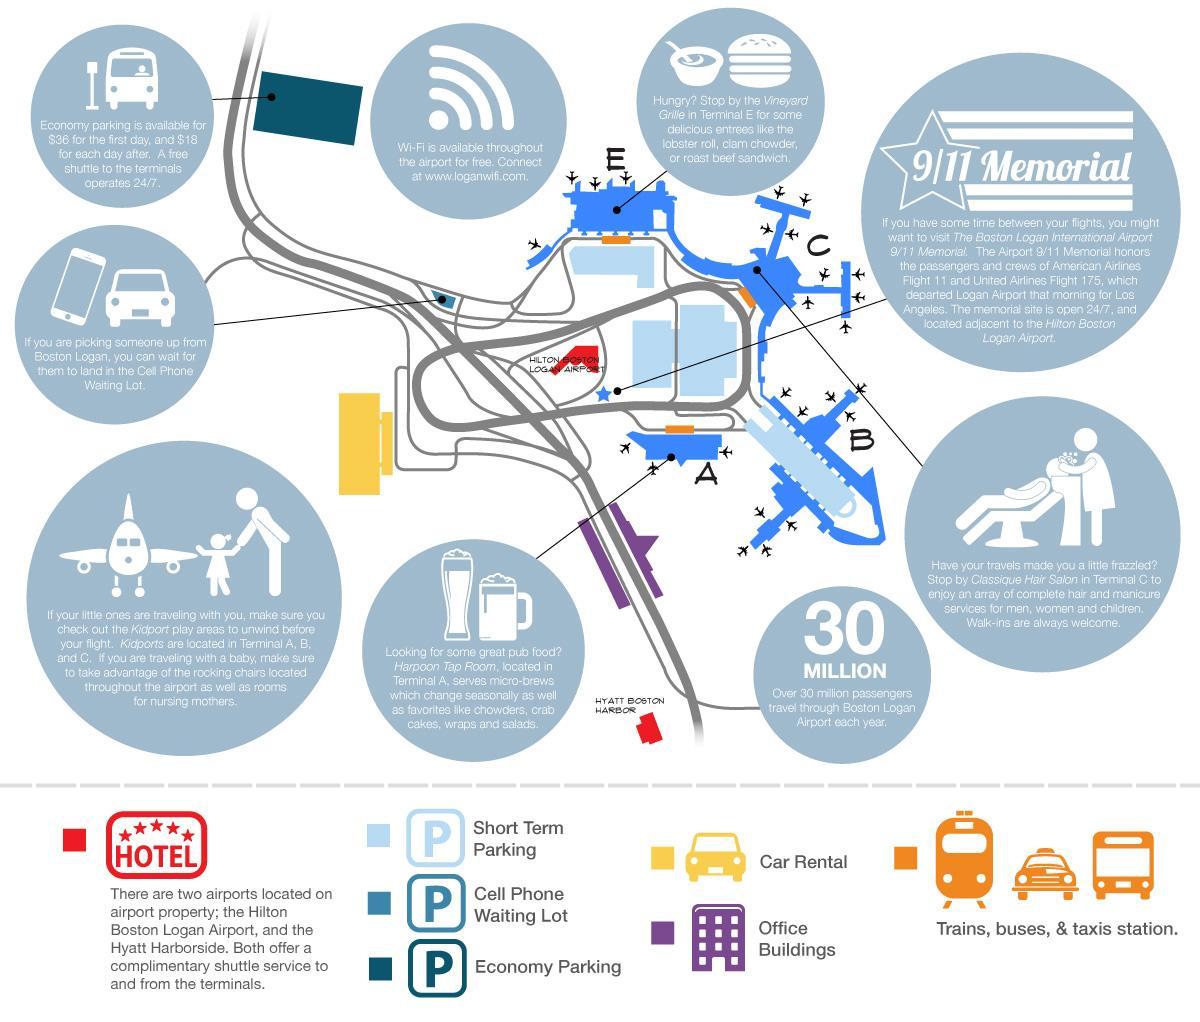 बोस्टन के लोगान पार्किंग का नक्शा